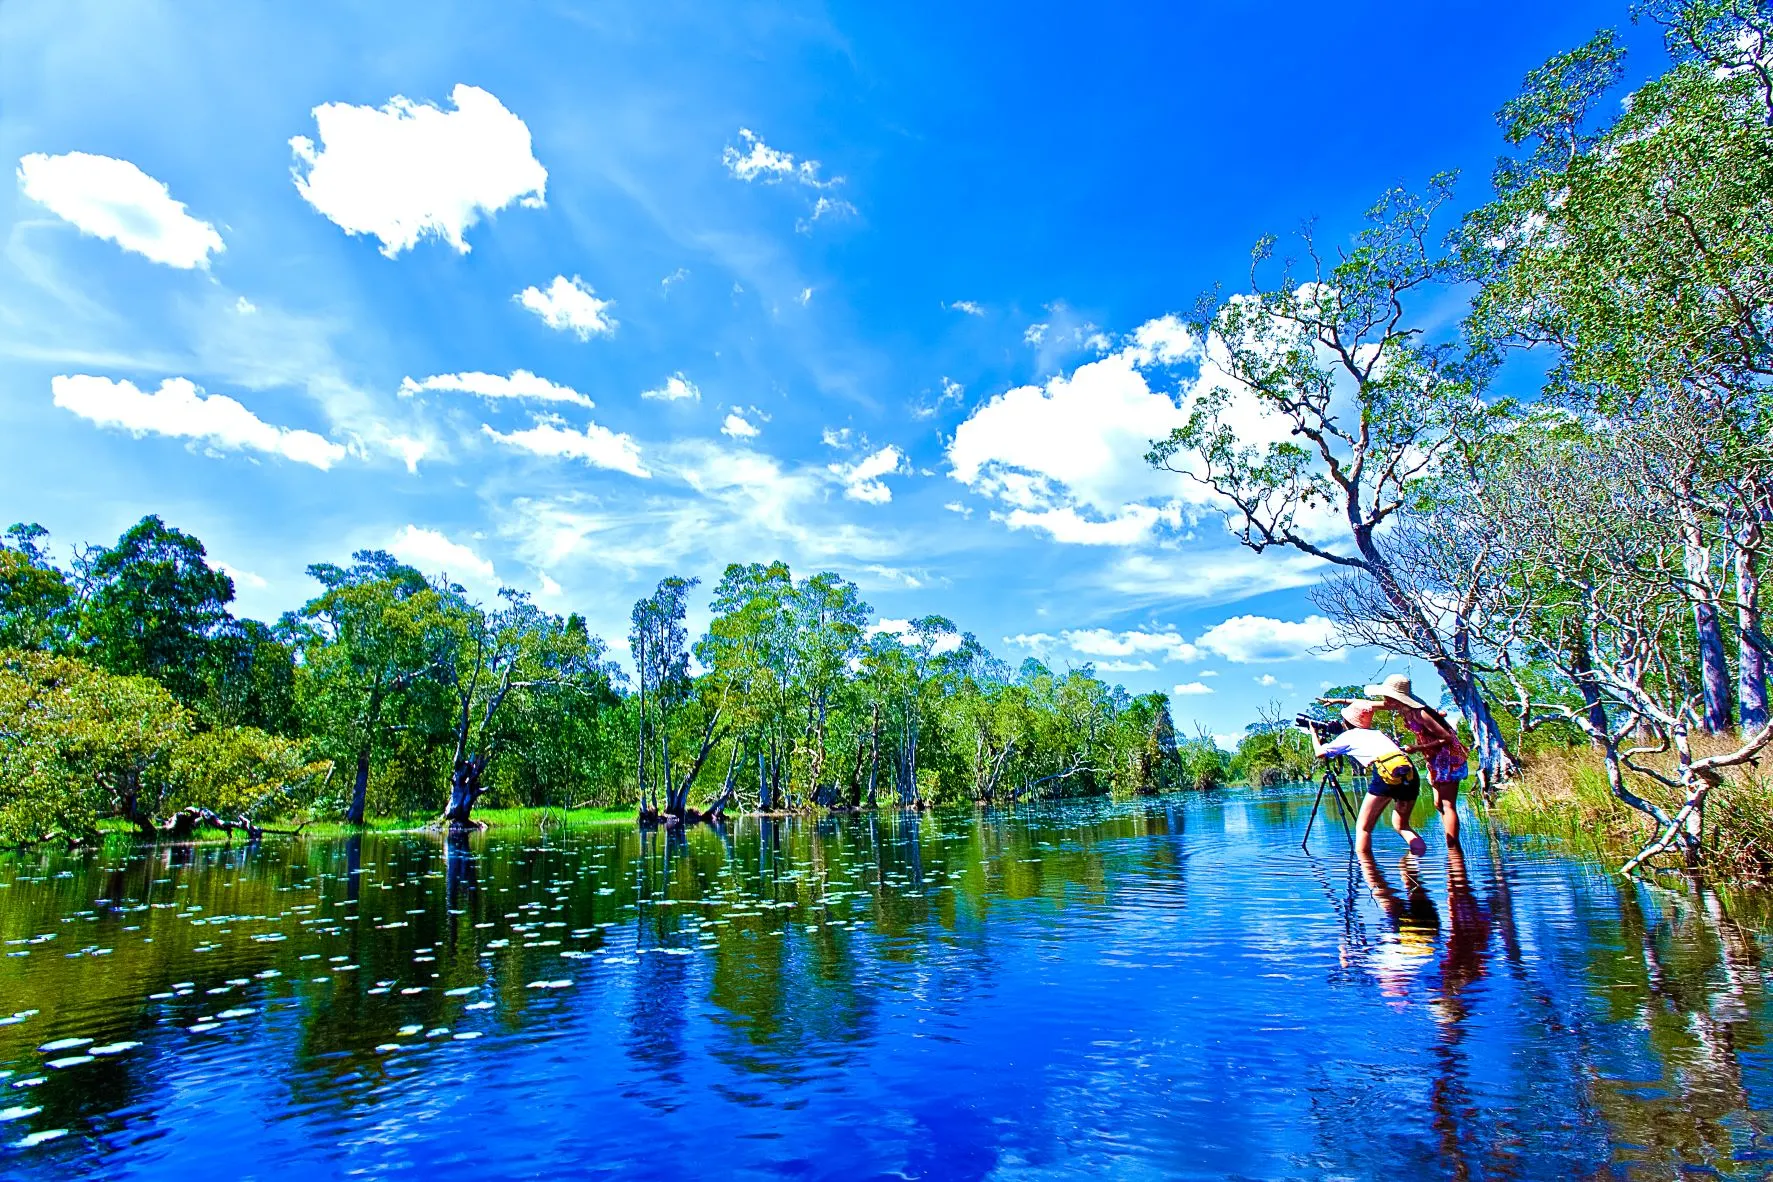 ตำบลโคกกลอย : เกาะพระทอง (Source: การท่องเที่ยวแห่งประเทศไทย)